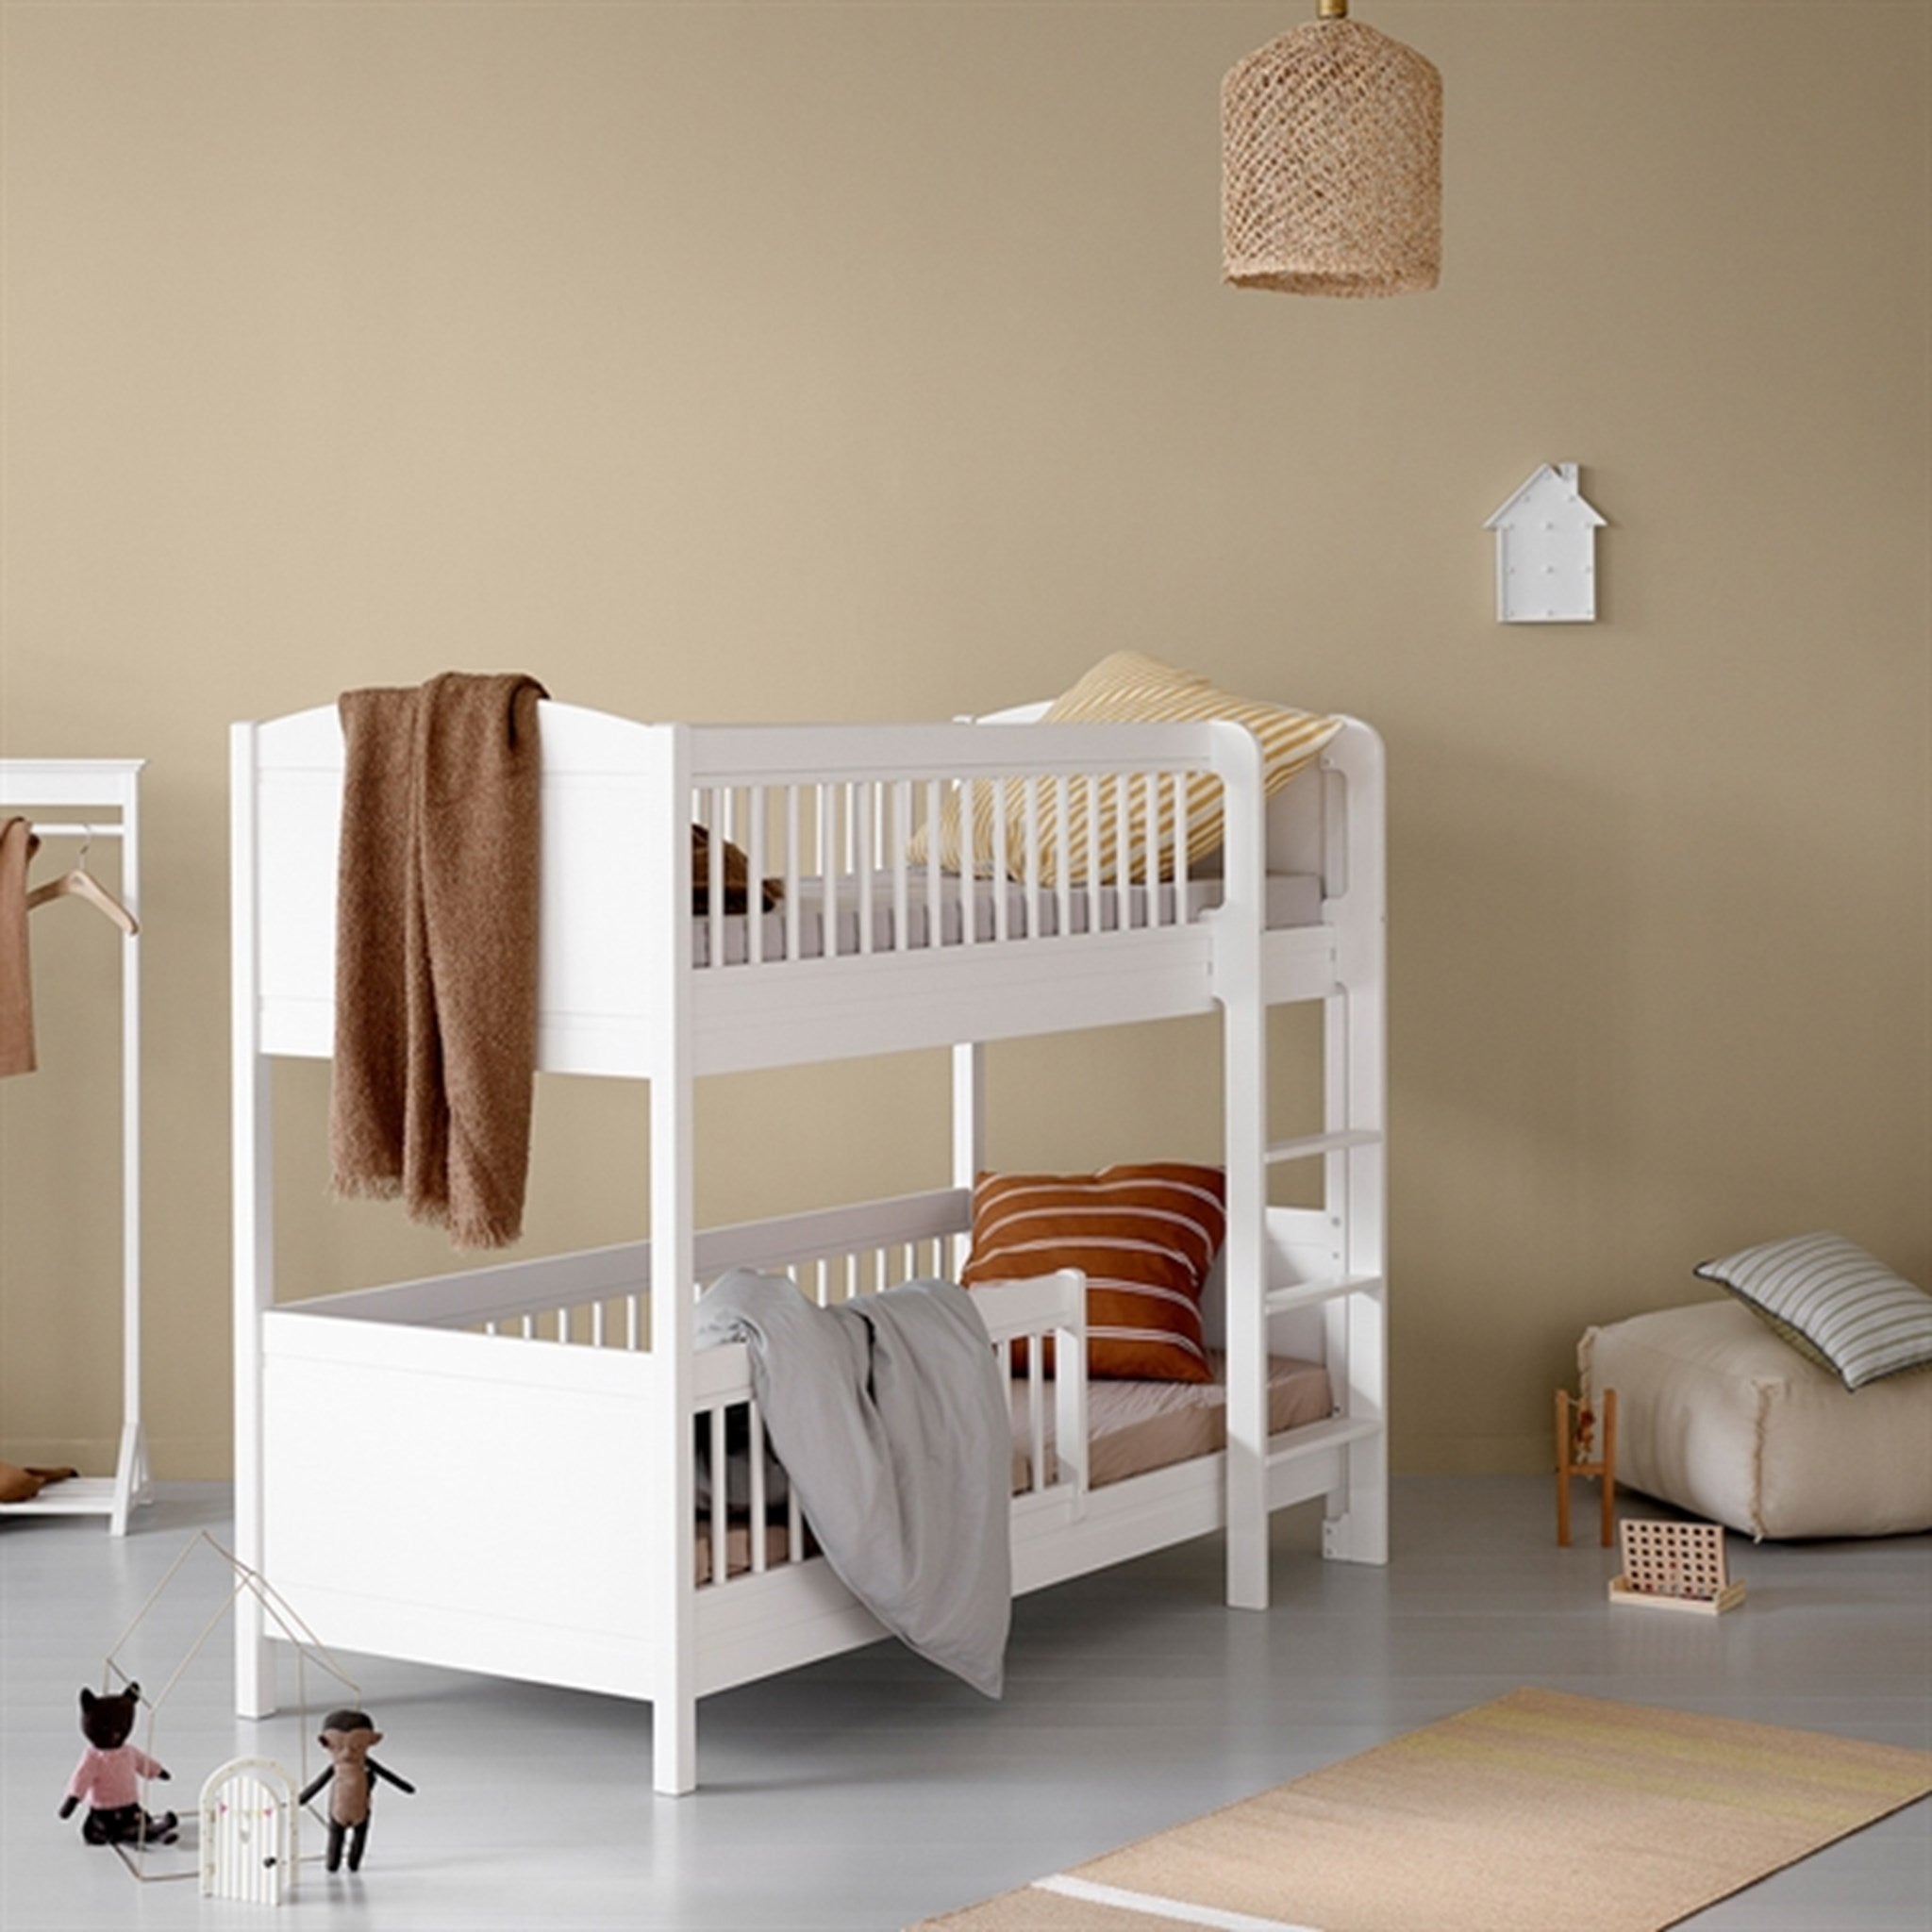 Oliver Furniture Seaside Lille+ Bunk Bed w. Ladder White 2